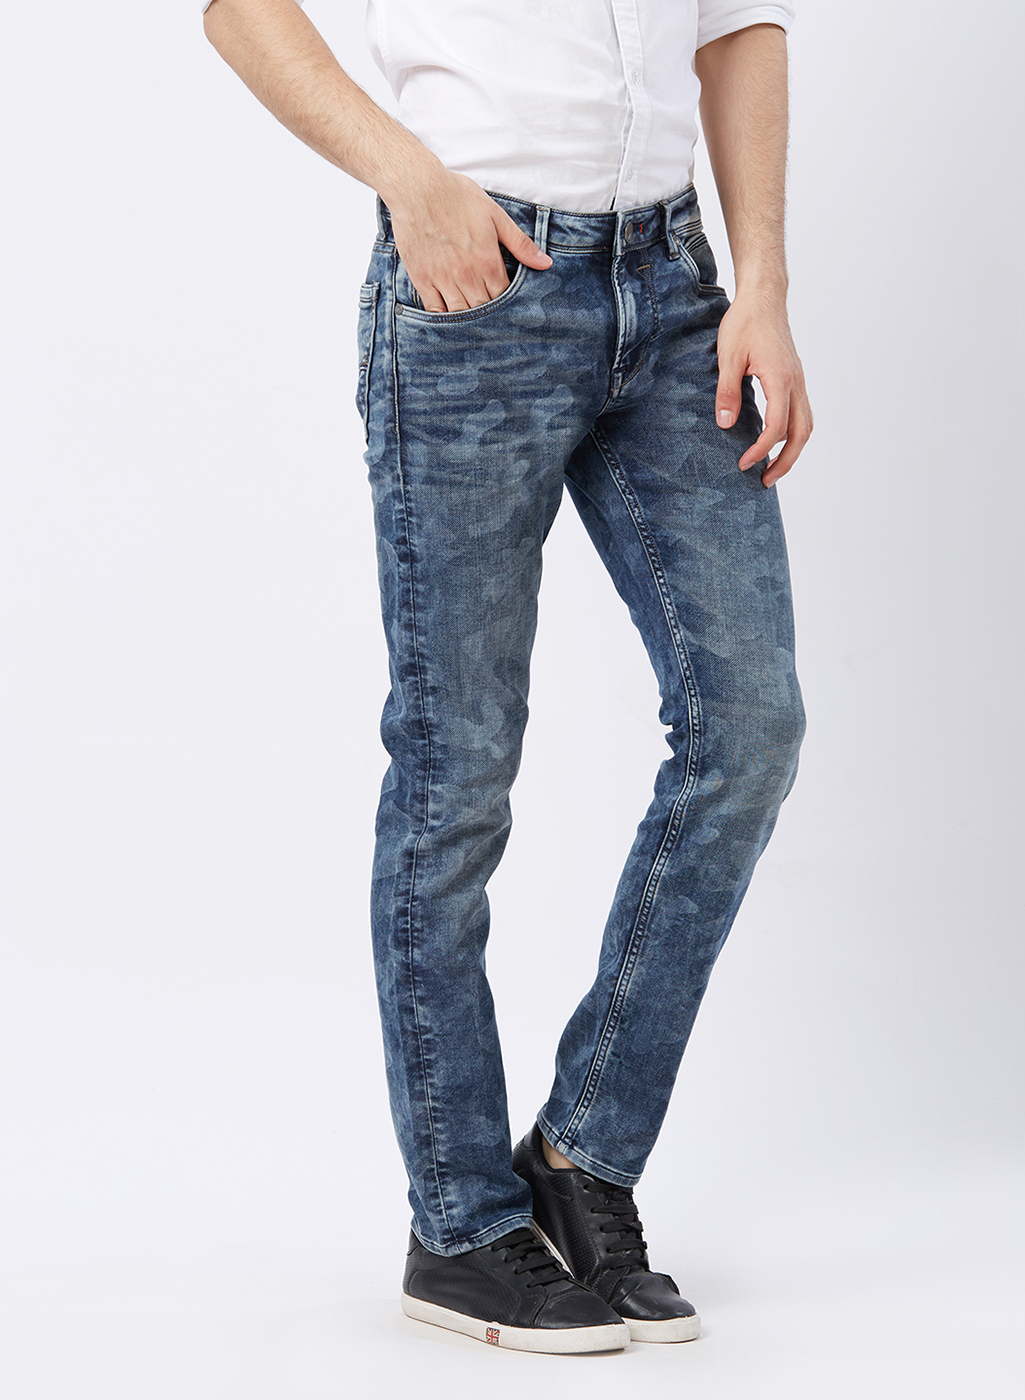 Buy Killer Men's Blue Jeans Online @ ₹3499 from ShopClues